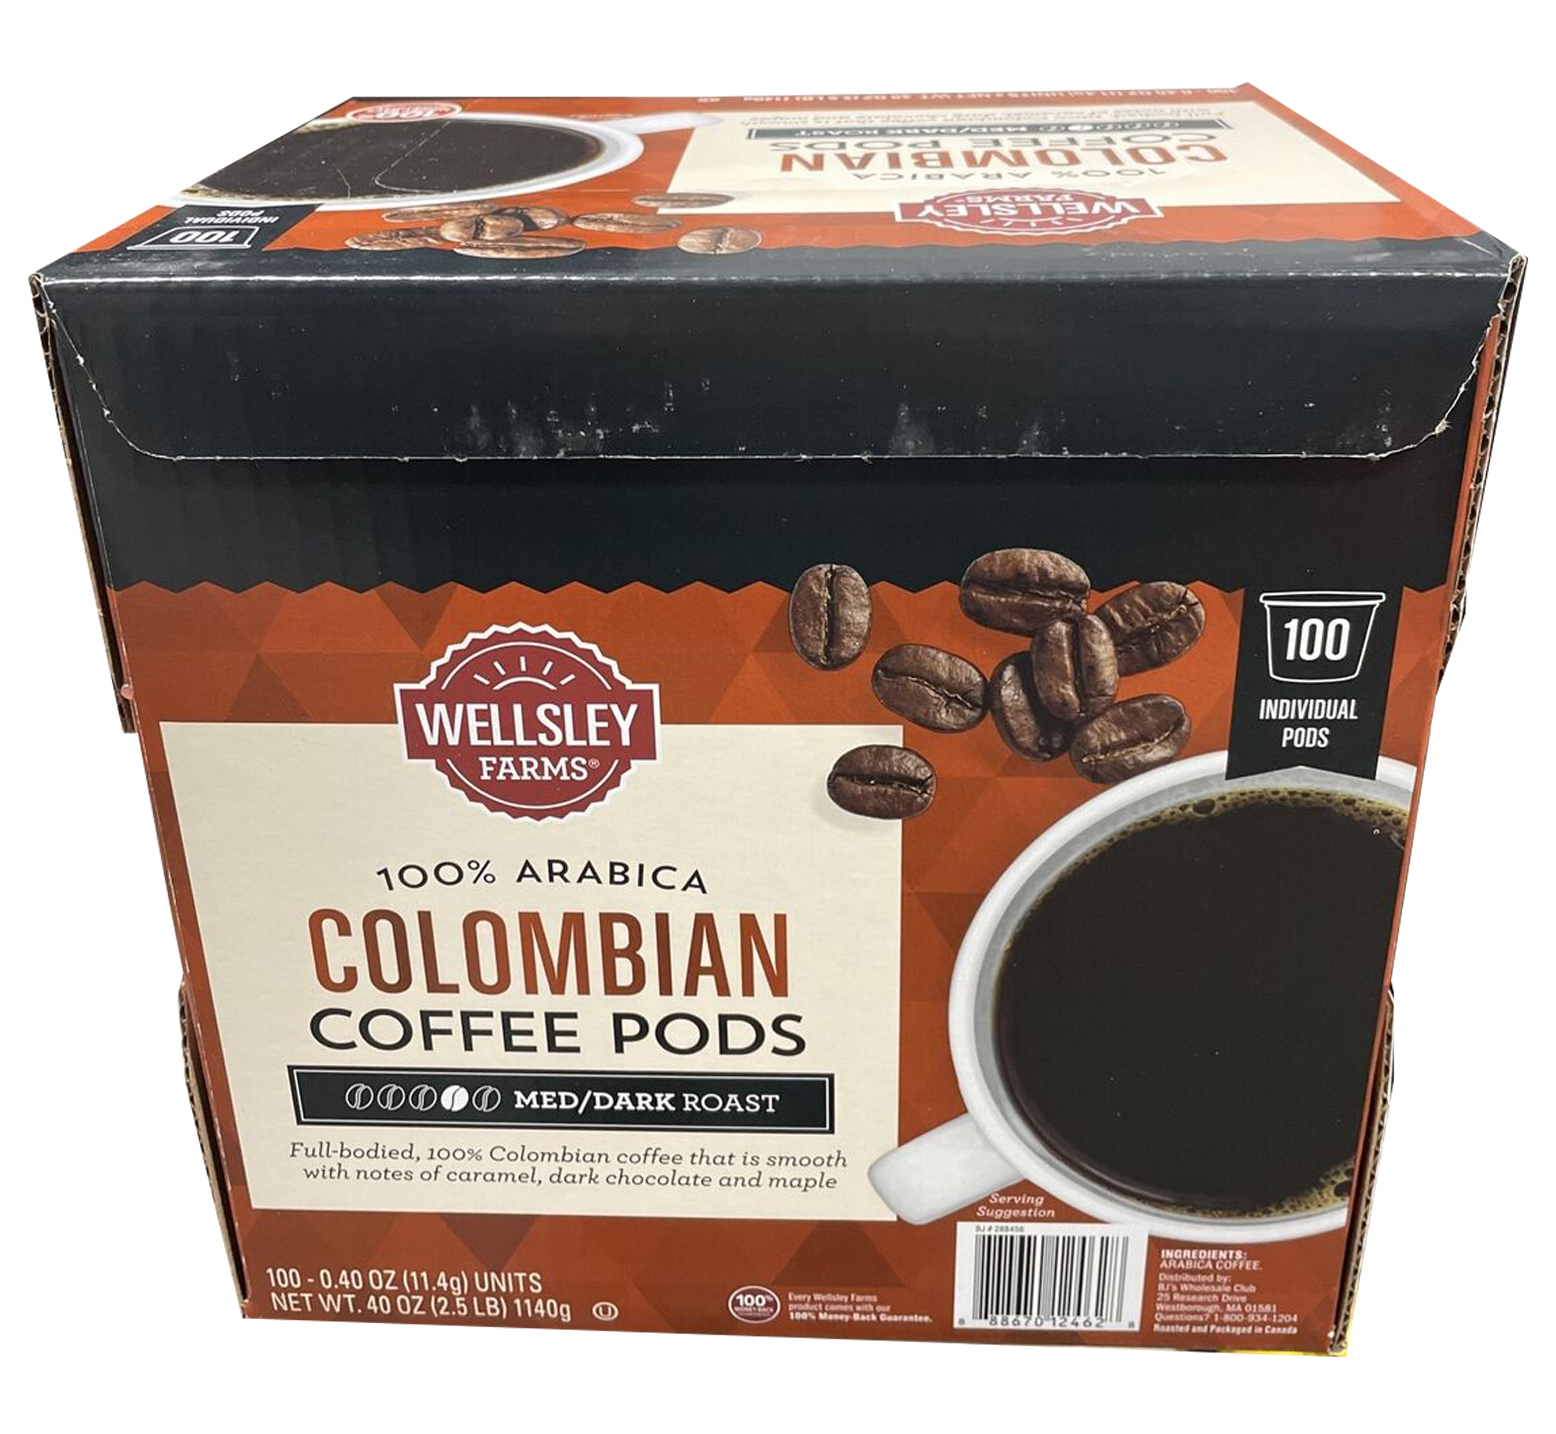 Wellsley farms Colombian coffe pods 100% Arabia Medium/ Dark Roast 100ct - $42.73